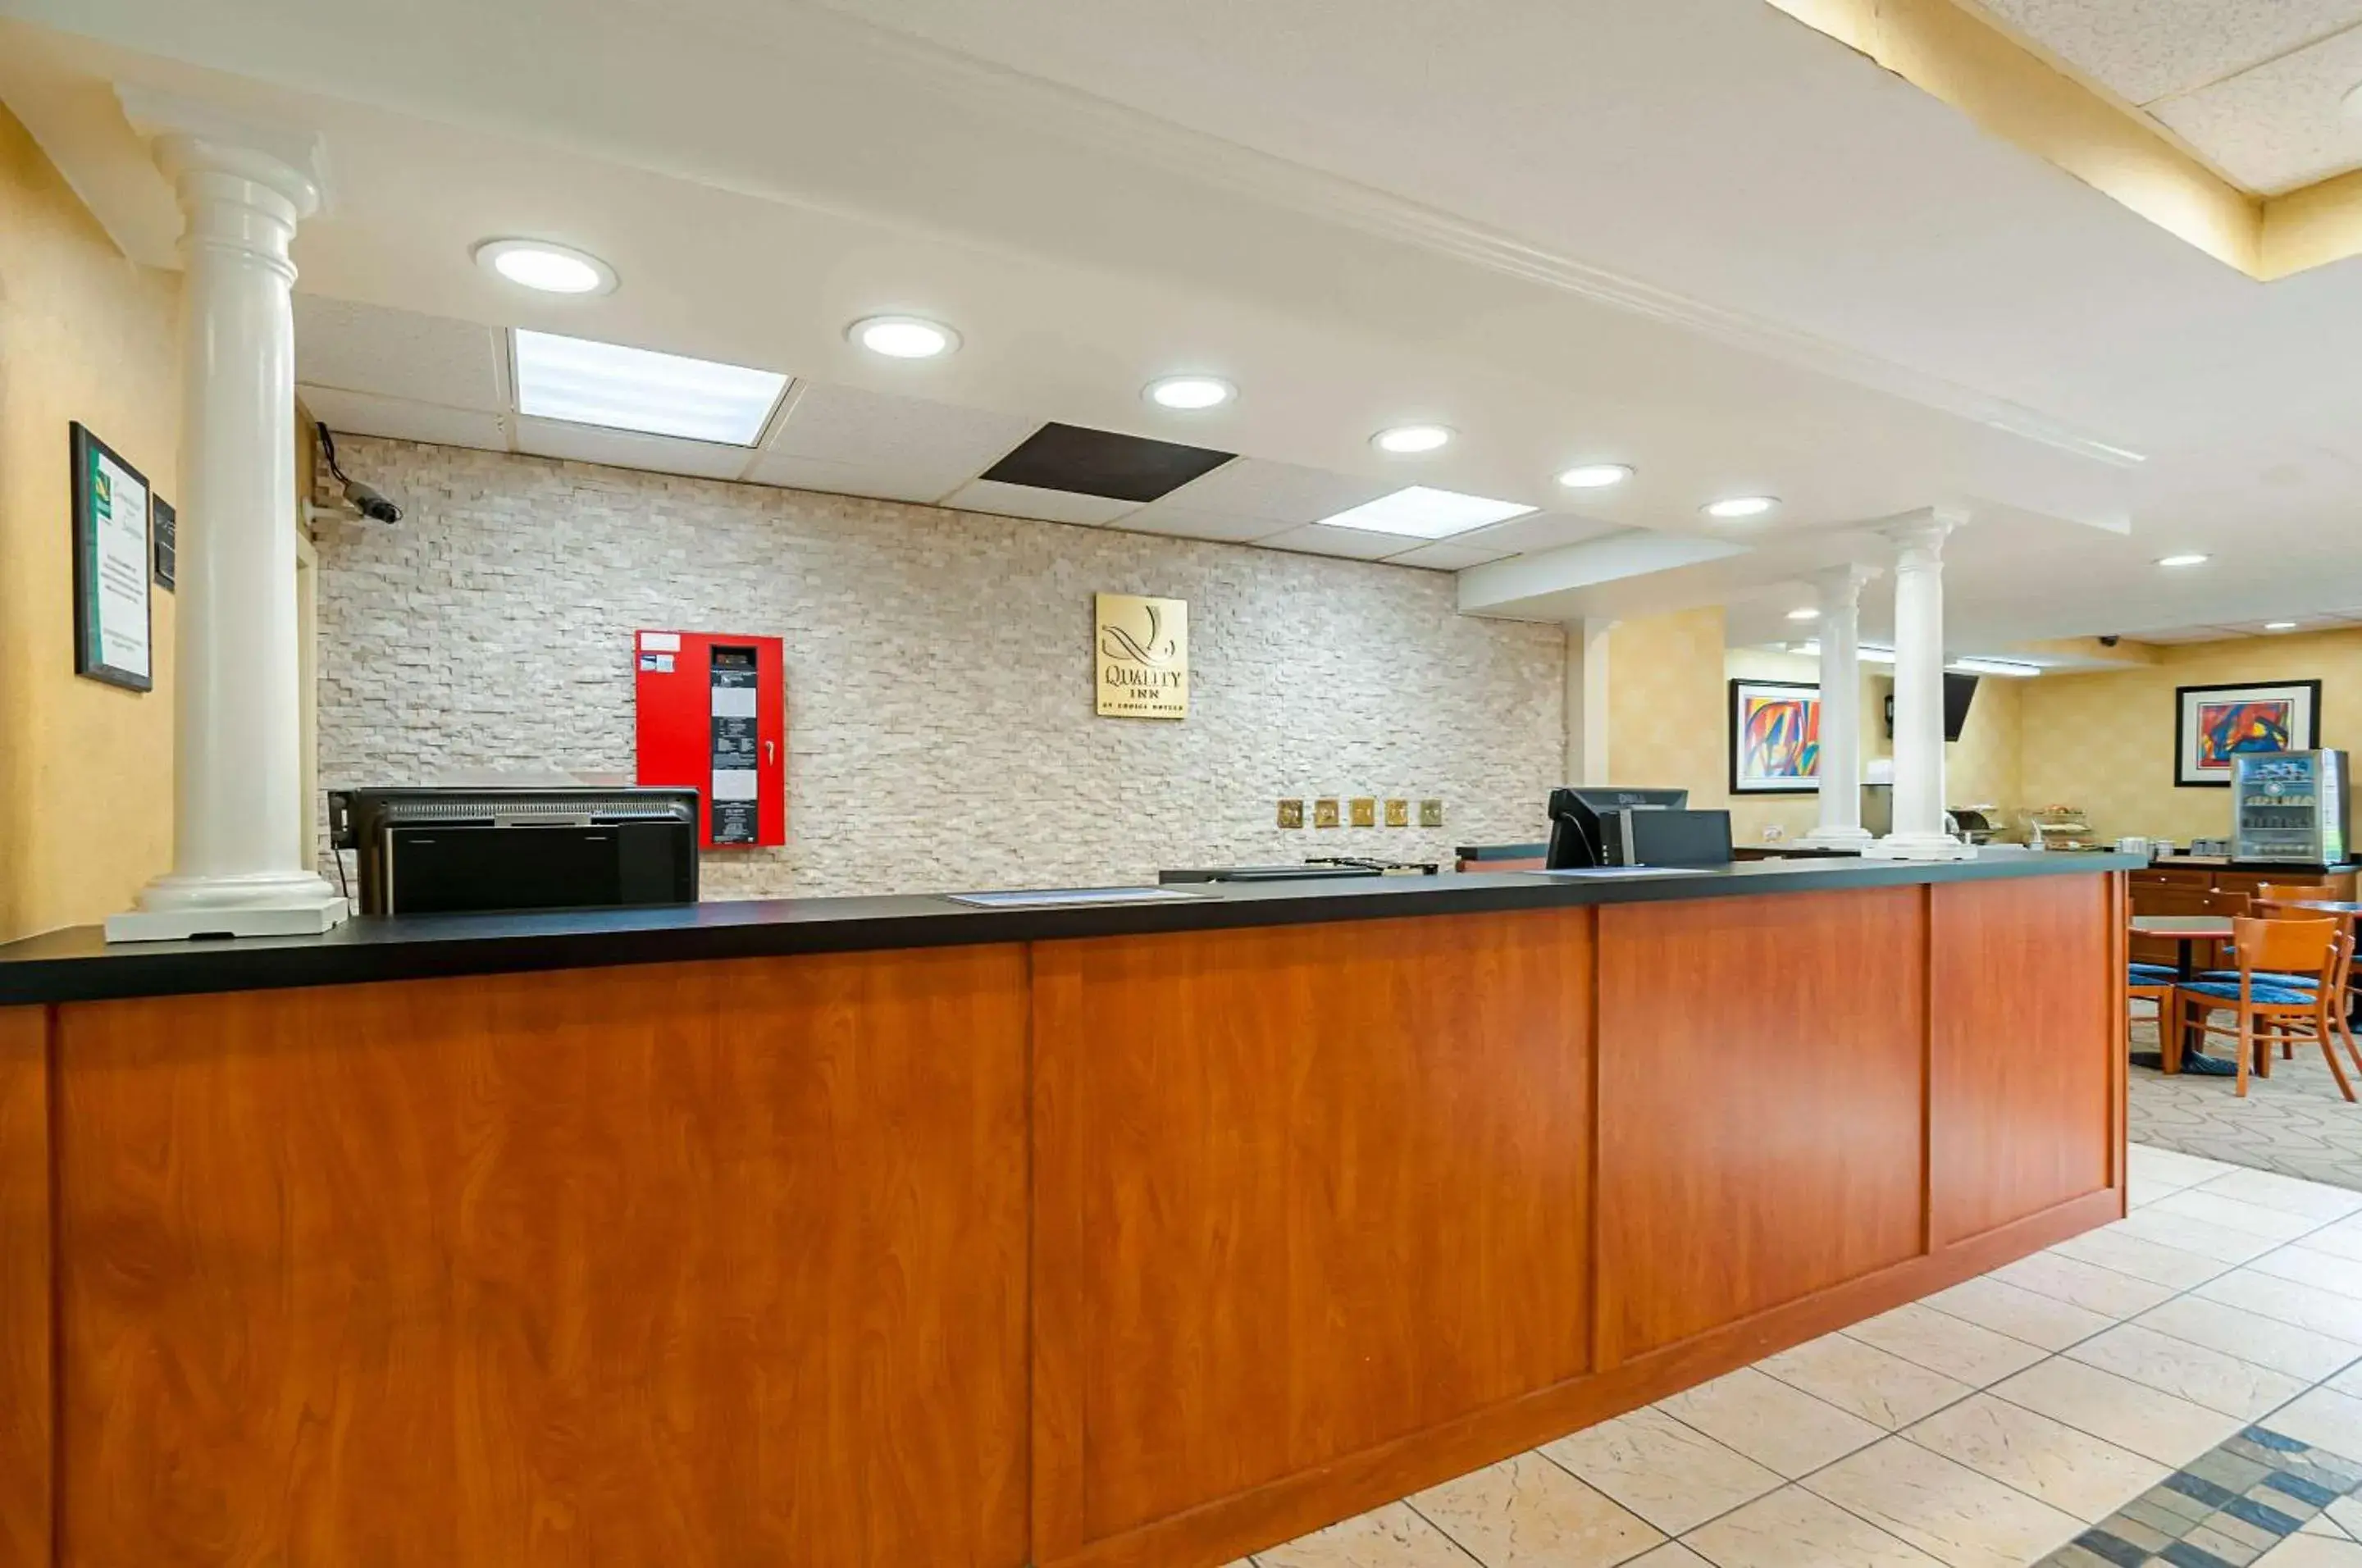 Lobby or reception, Lobby/Reception in Quality Inn Salisbury